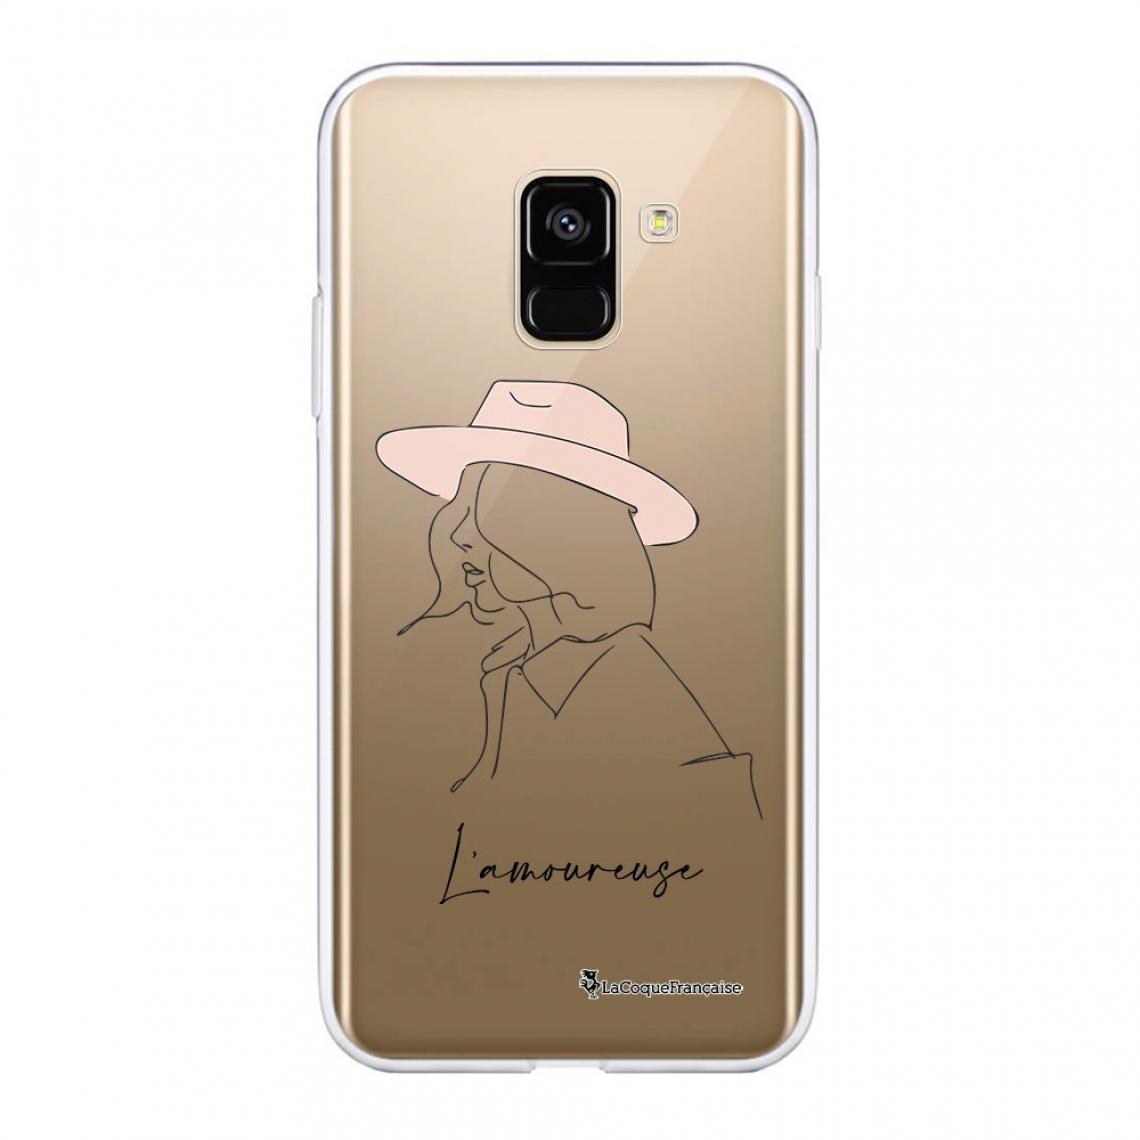 La Coque Francaise - Coque Samsung Galaxy A8 2018 360 intégrale avant arrière transparente - Coque, étui smartphone